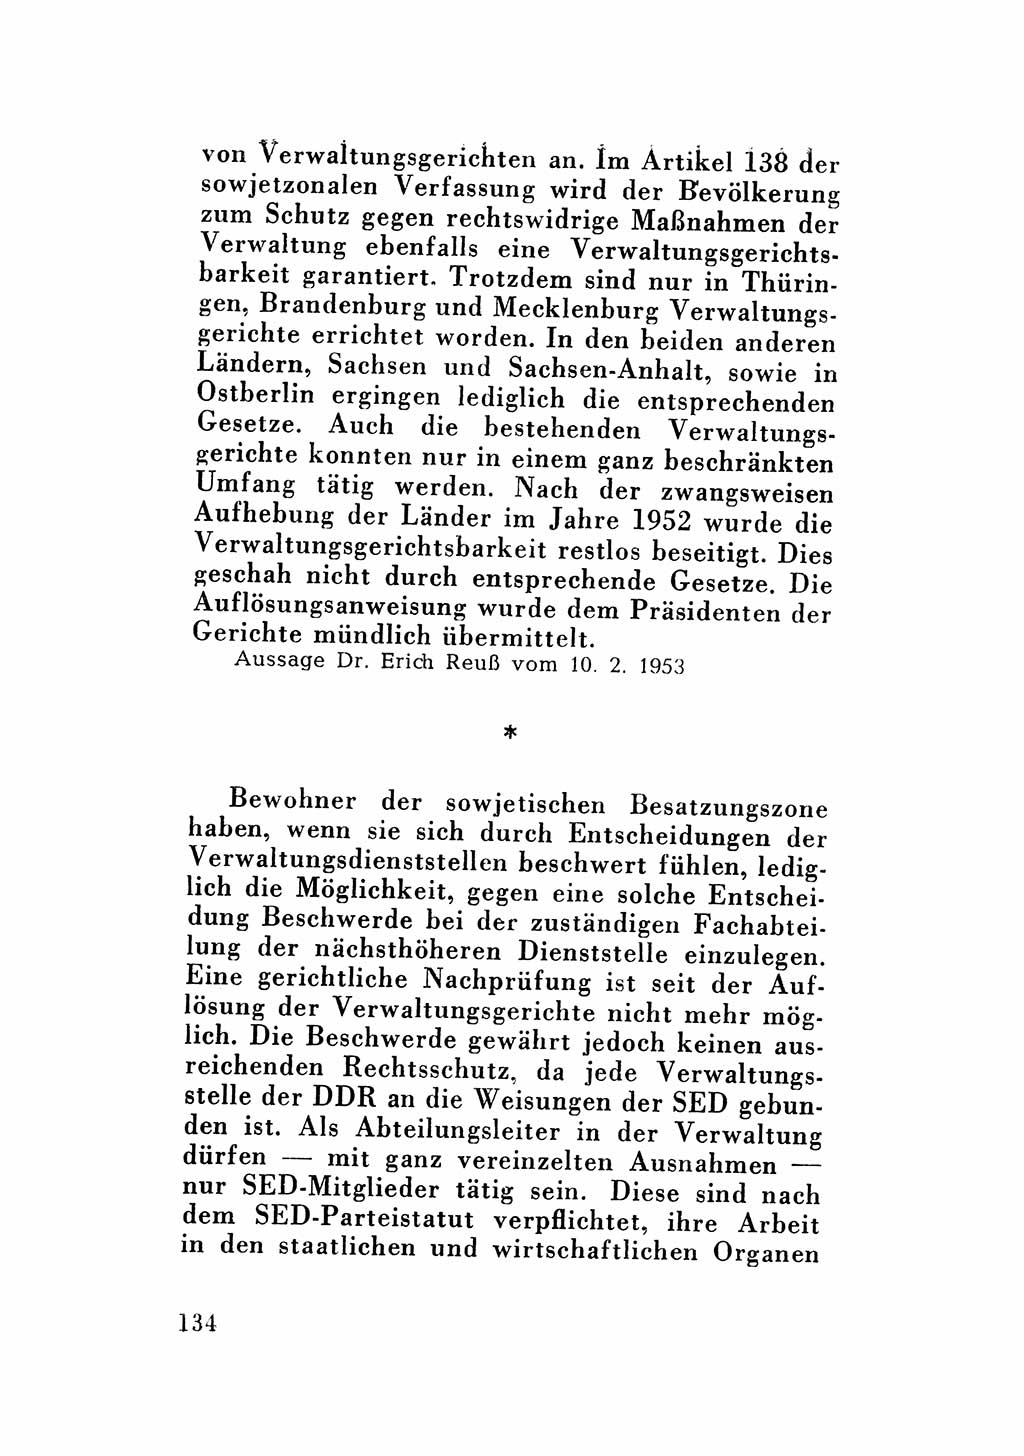 Katalog des Unrechts, Untersuchungsausschuß Freiheitlicher Juristen (UfJ) [Bundesrepublik Deutschland (BRD)] 1956, Seite 134 (Kat. UnR. UfJ BRD 1956, S. 134)